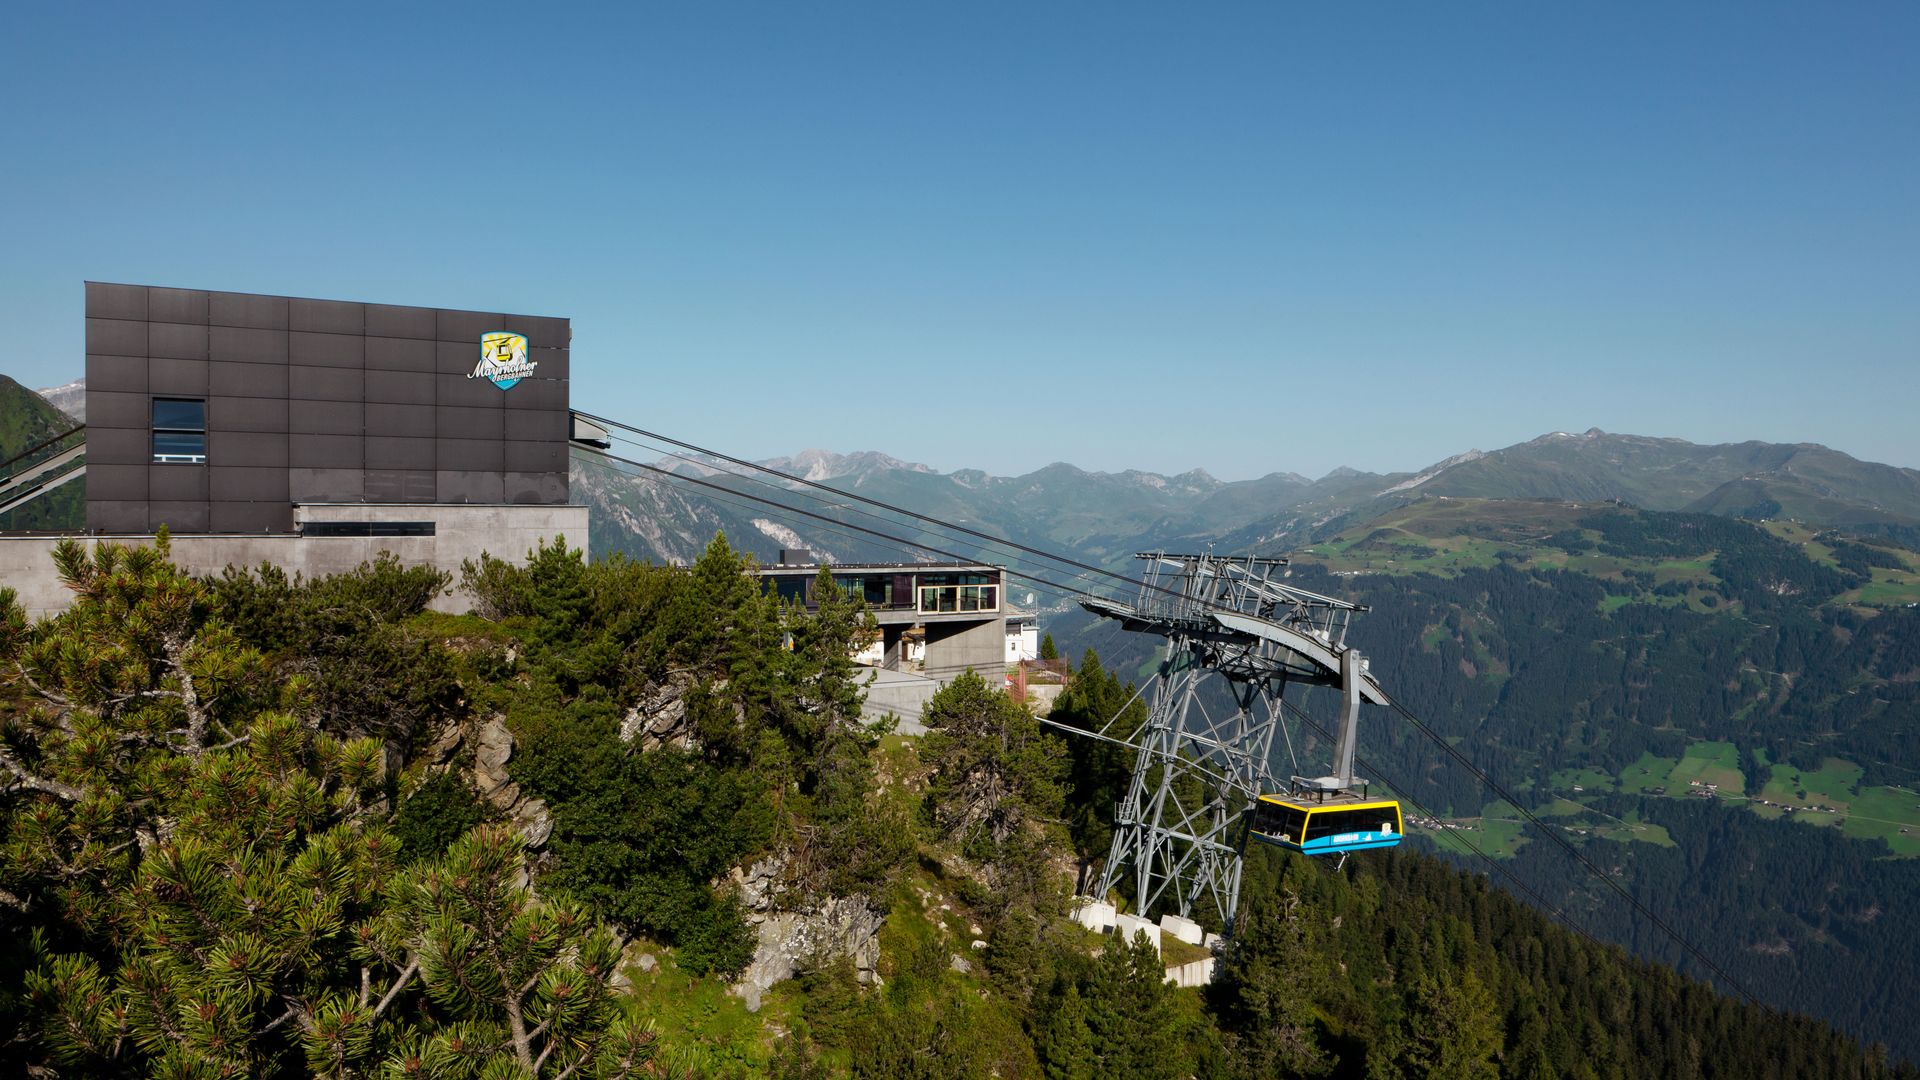 Cable Car "Ahornbahn" in Mayrhofen